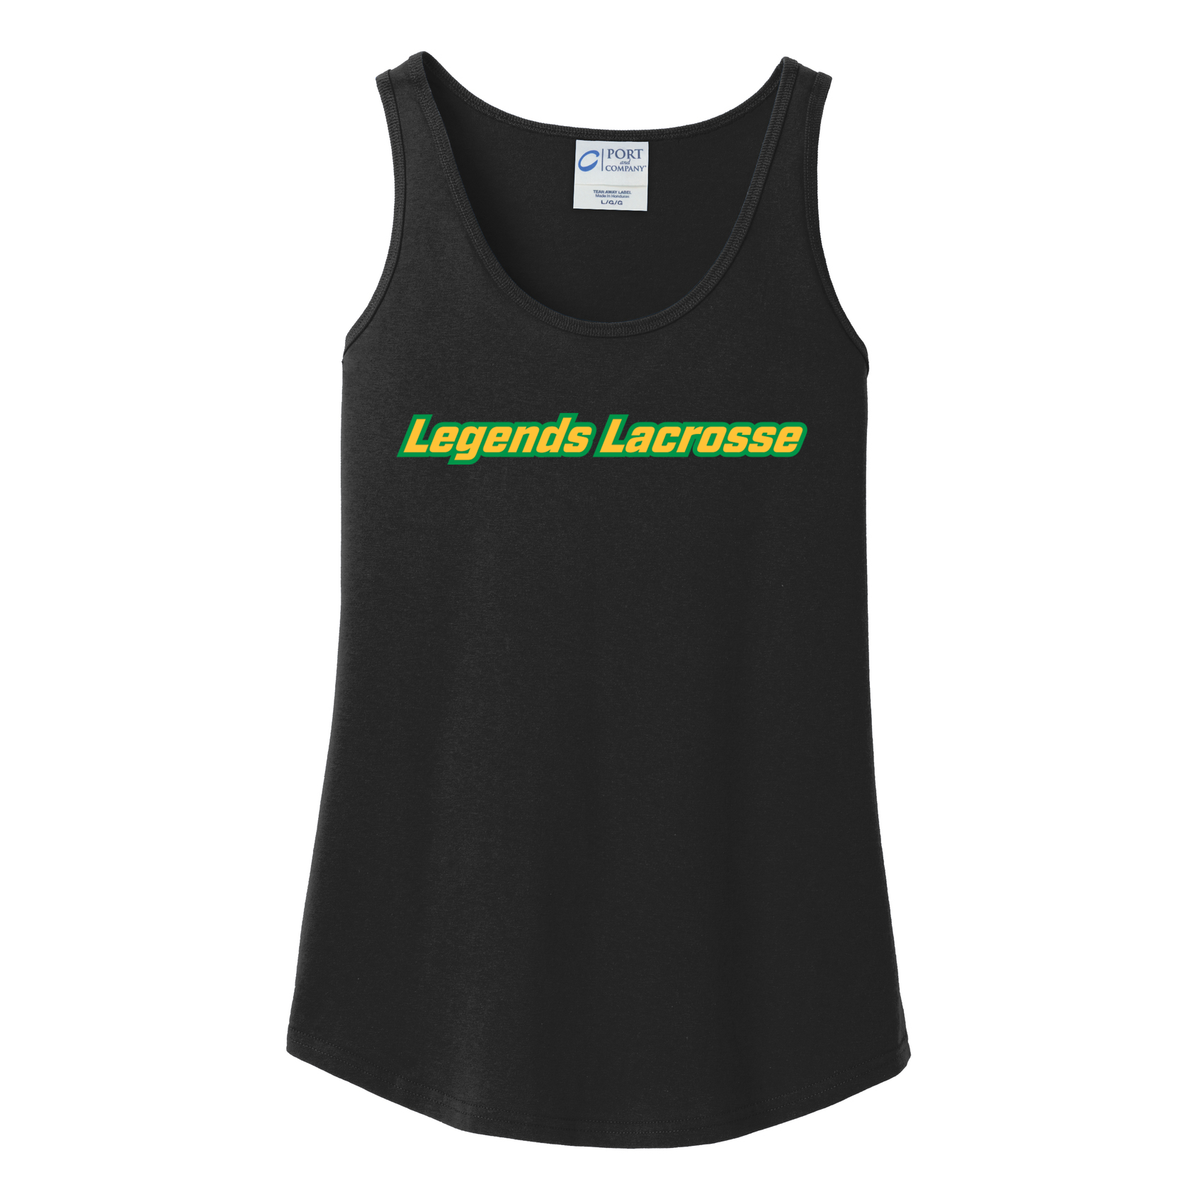 Legends Lacrosse Women's Tank Top